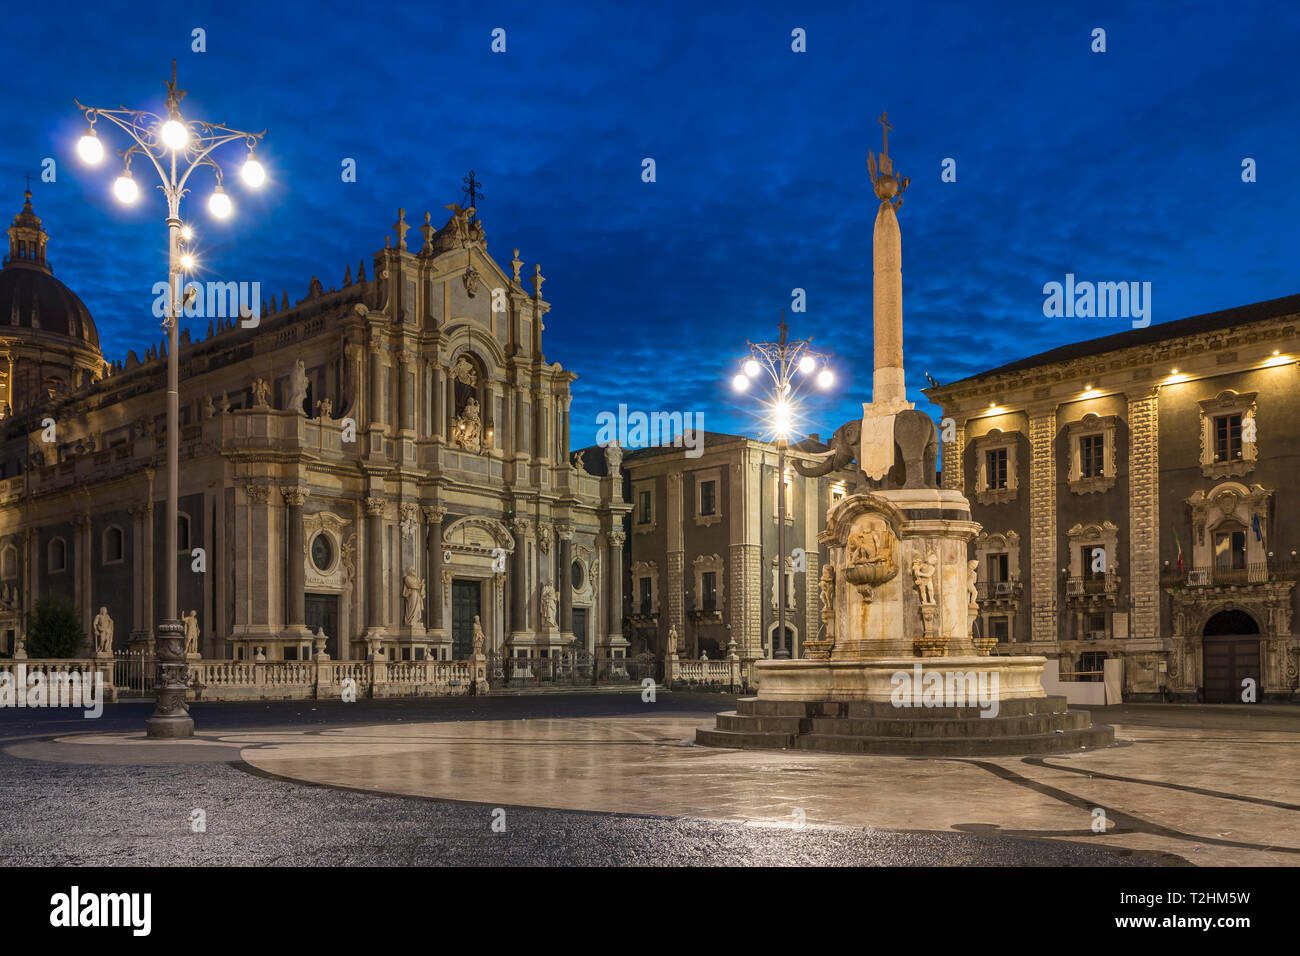 La Cathédrale illuminée pendant l'heure bleue, Catane, Sicile, Italie, Europe Banque D'Images